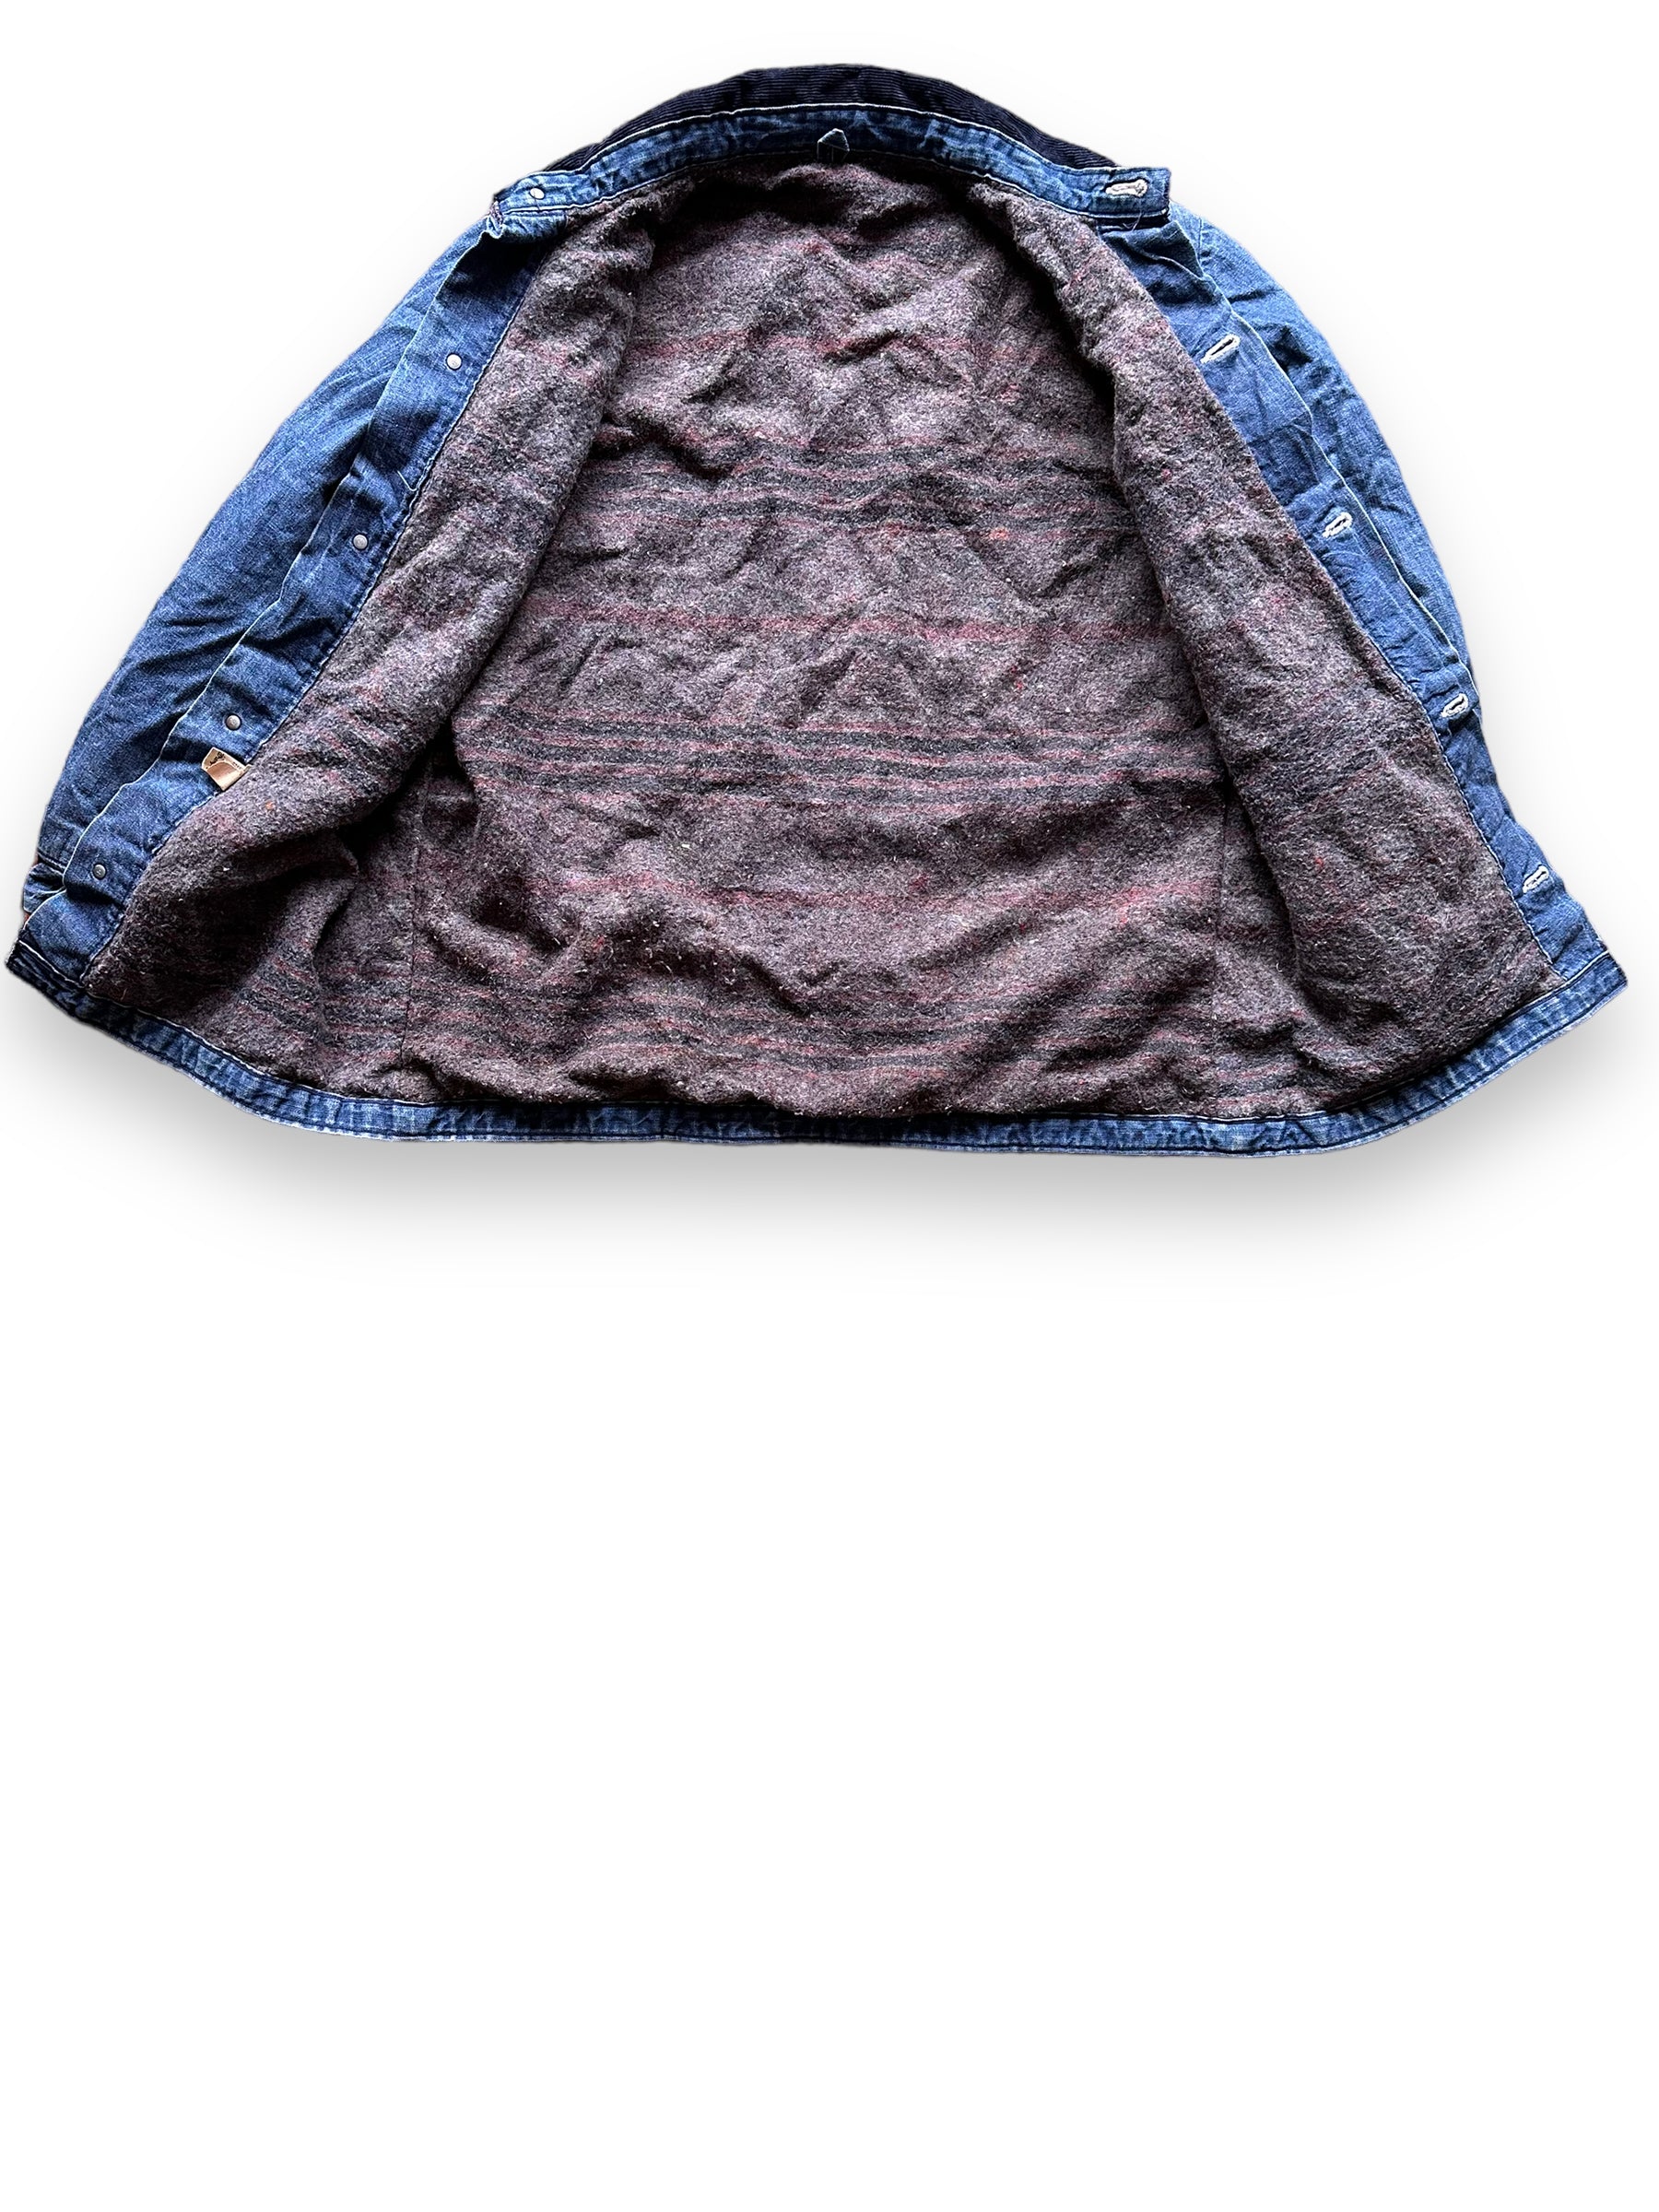 Liner View of Vintage Wrangler Blue Bell Blanket Lined Denim Chore Coat SZ 40 | Vintage Denim Chore Coat | Barn Owl Vintage Seattle